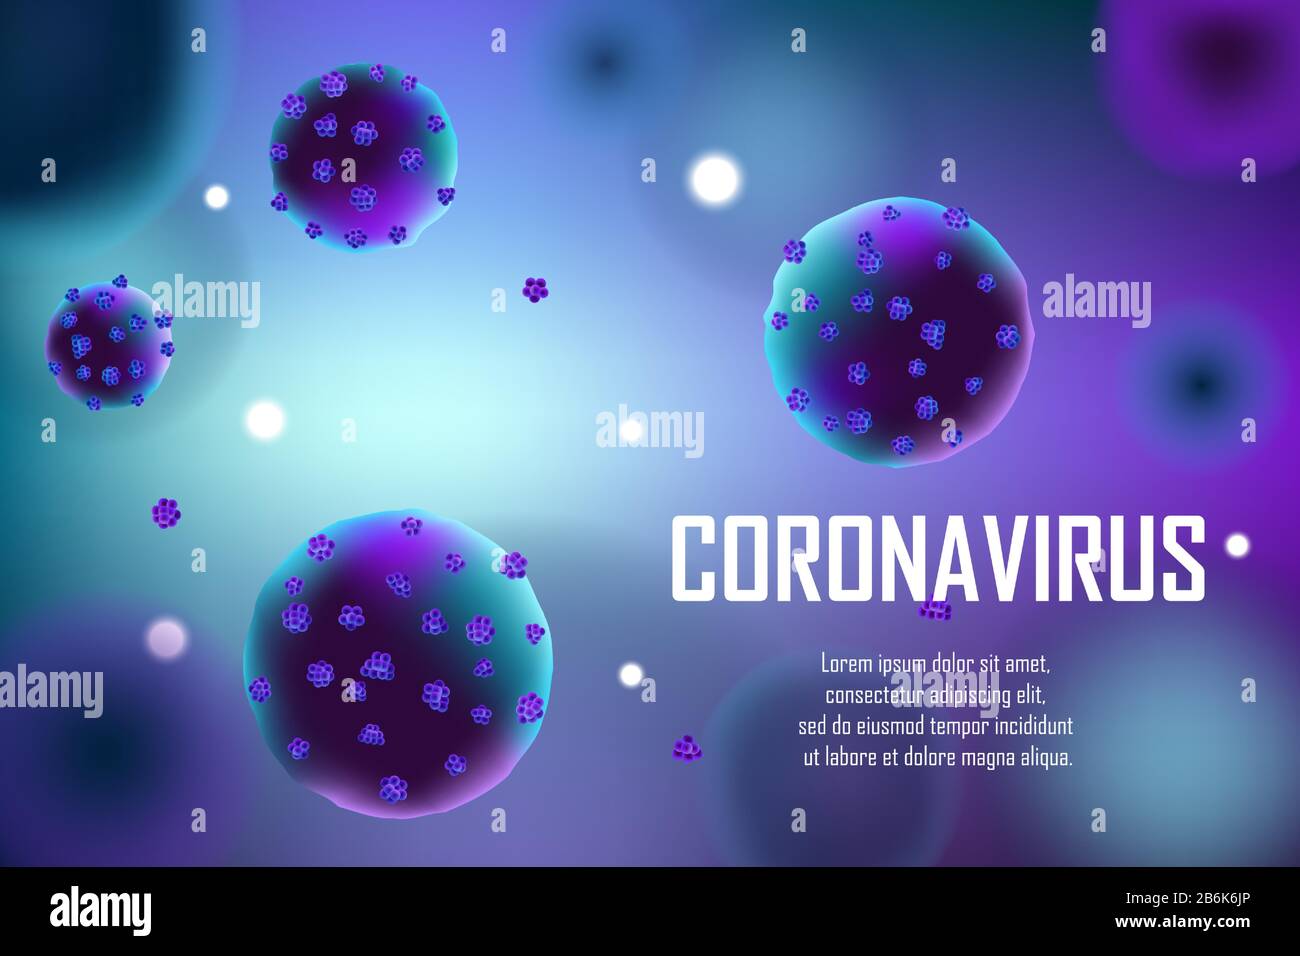 Realistischer Hintergrund des medizinischen Ausbruchs des Coronavirus. Pandemic Coronavirus 2019-nCoV Anzeigenkonzept Bannerdesign. Vektorgrafiken für Viruszellen. Stock Vektor